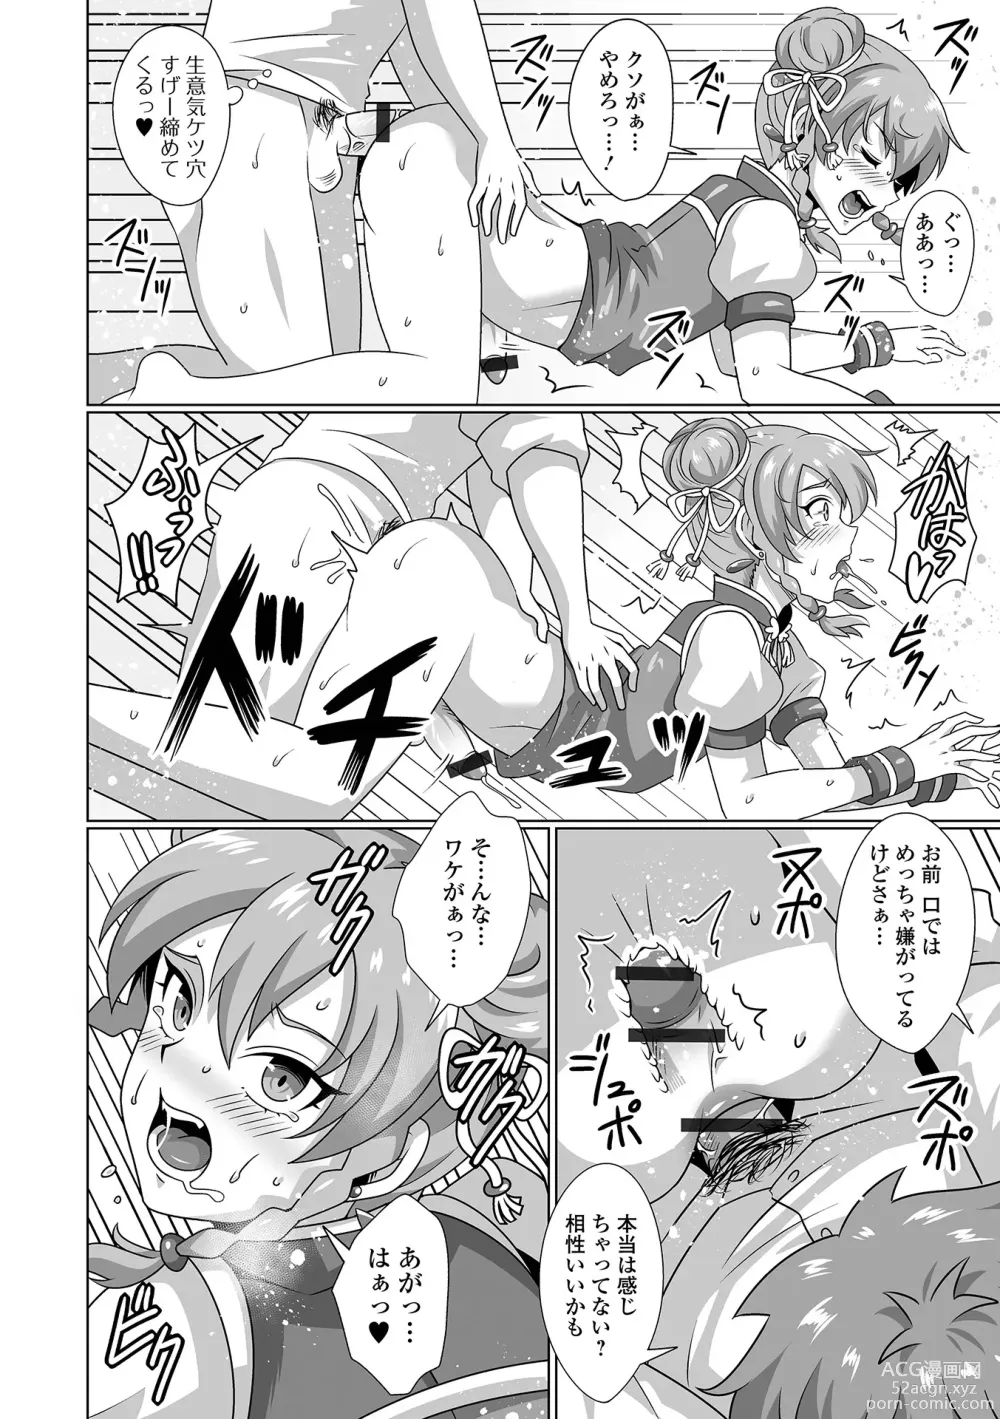 Page 80 of manga Gekkan Web Otoko no Ko-llection! S Vol. 92